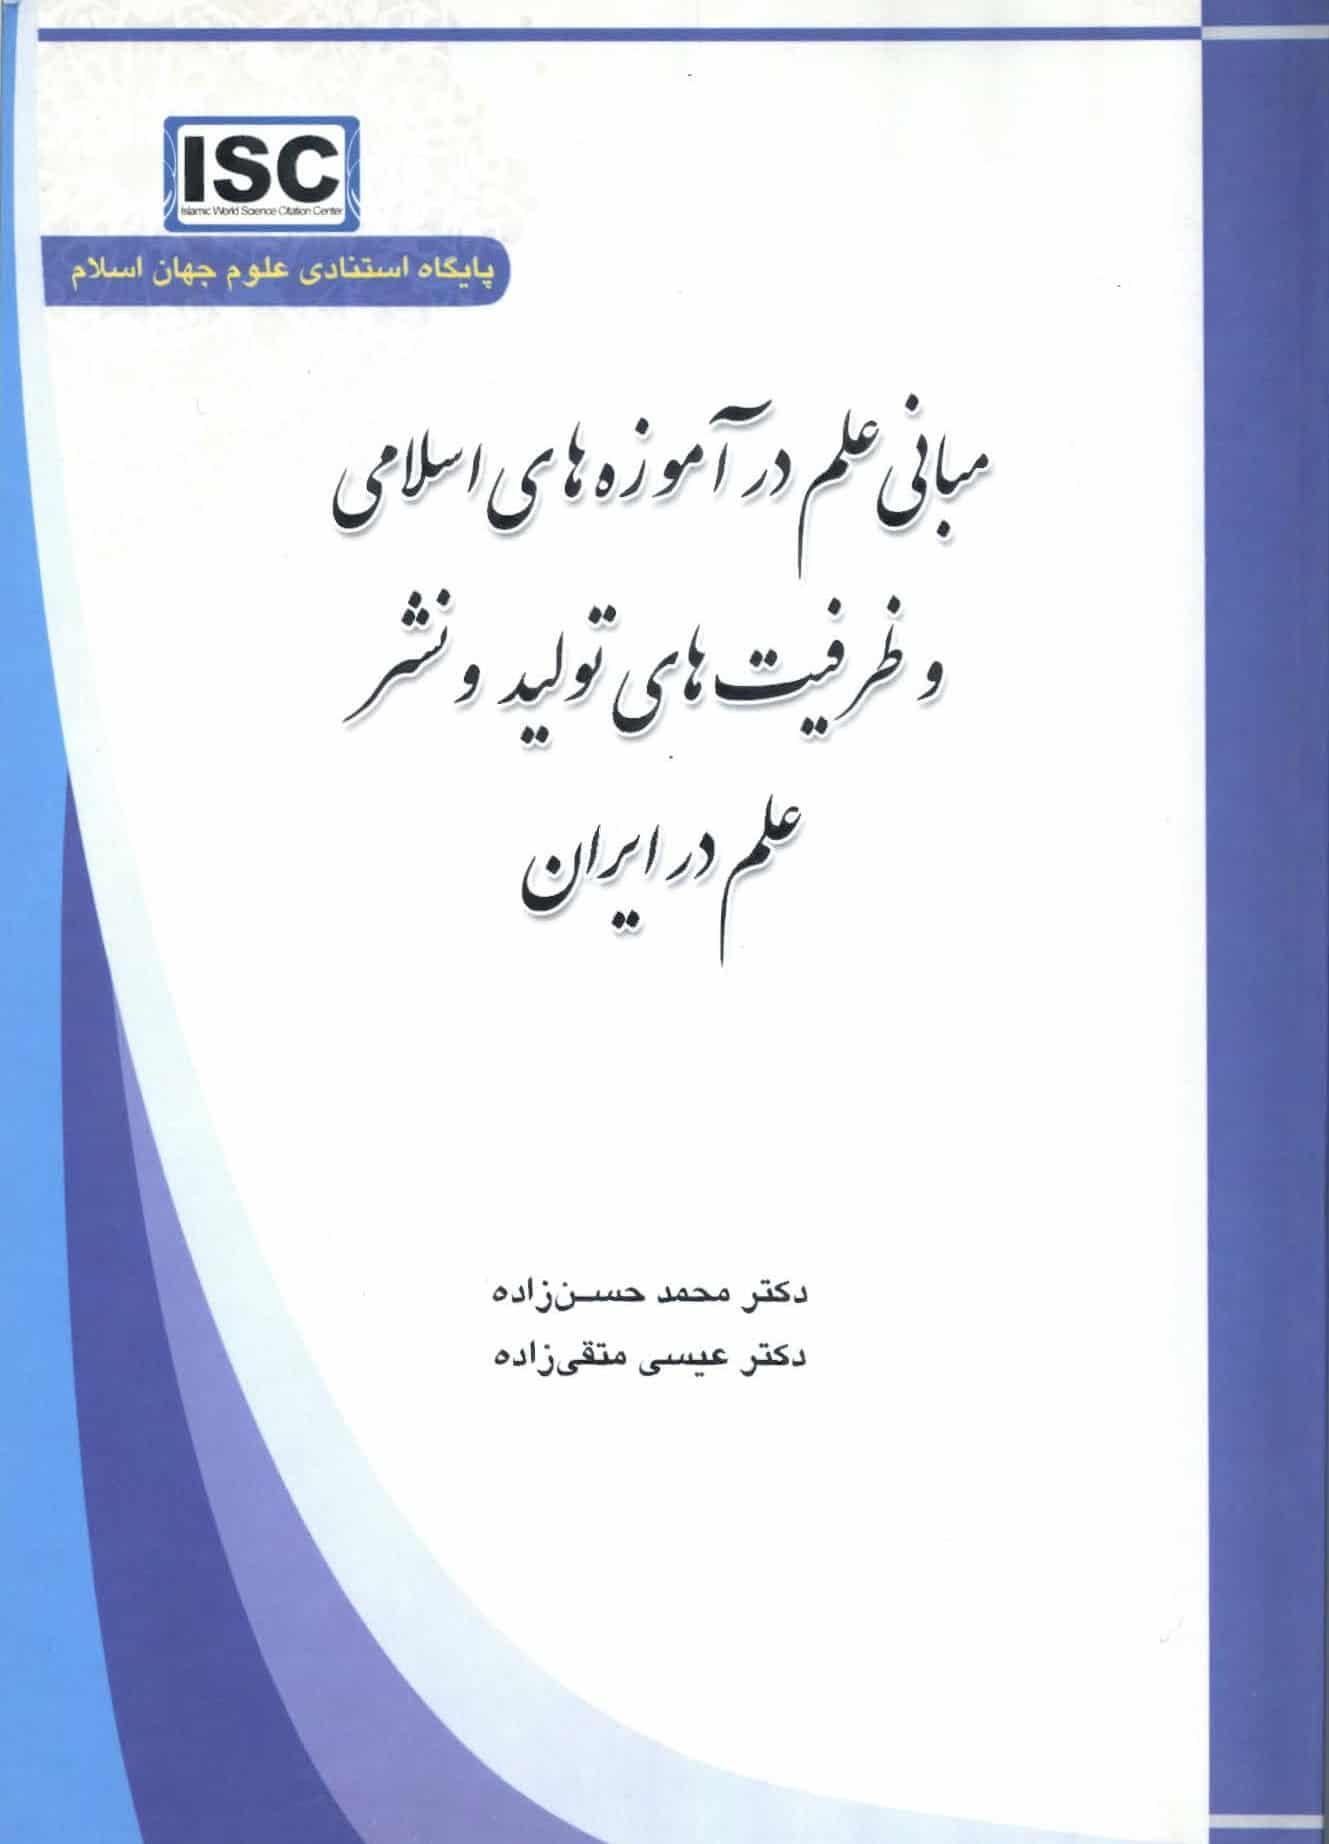 مبانی علم در آموزه های اسلامی و ظرفیت های تولید و نشر علم در ایران